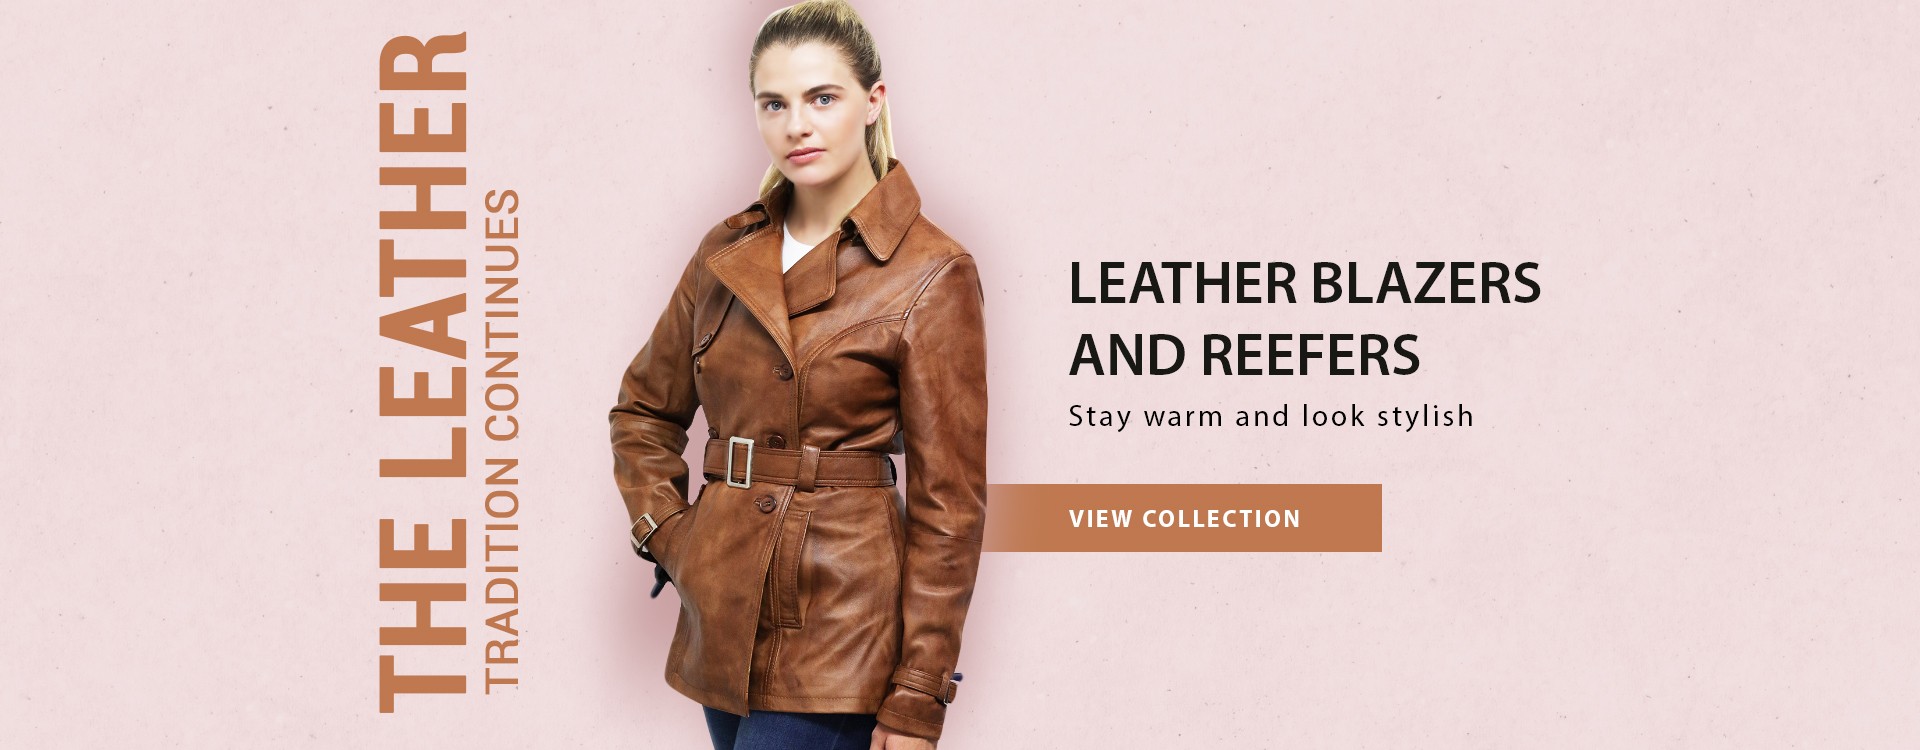 Leather Blazer Women